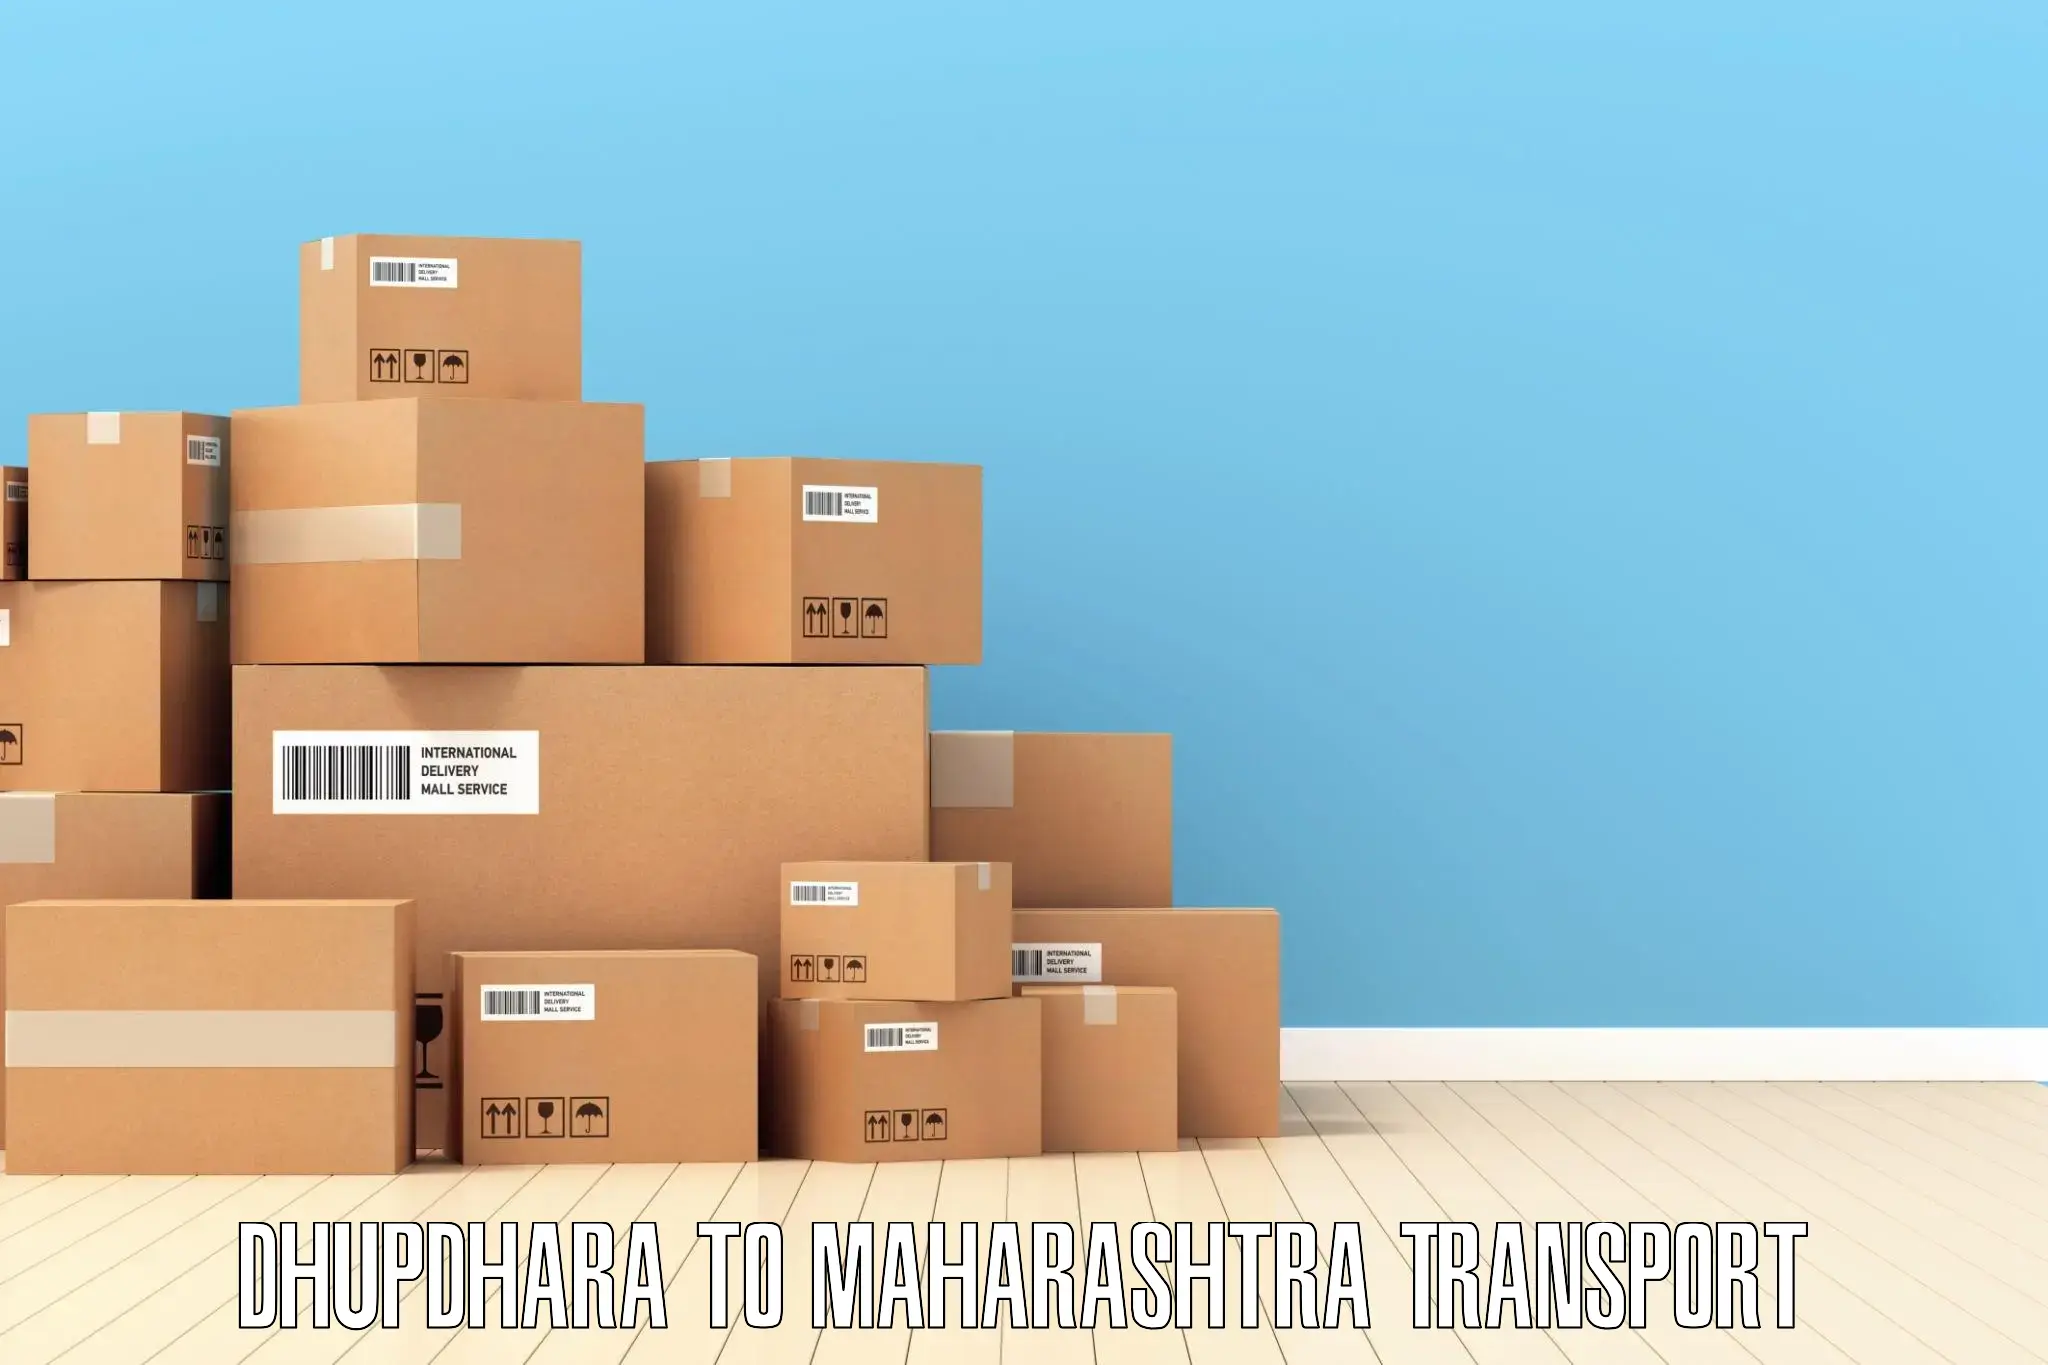 Interstate goods transport Dhupdhara to Raver